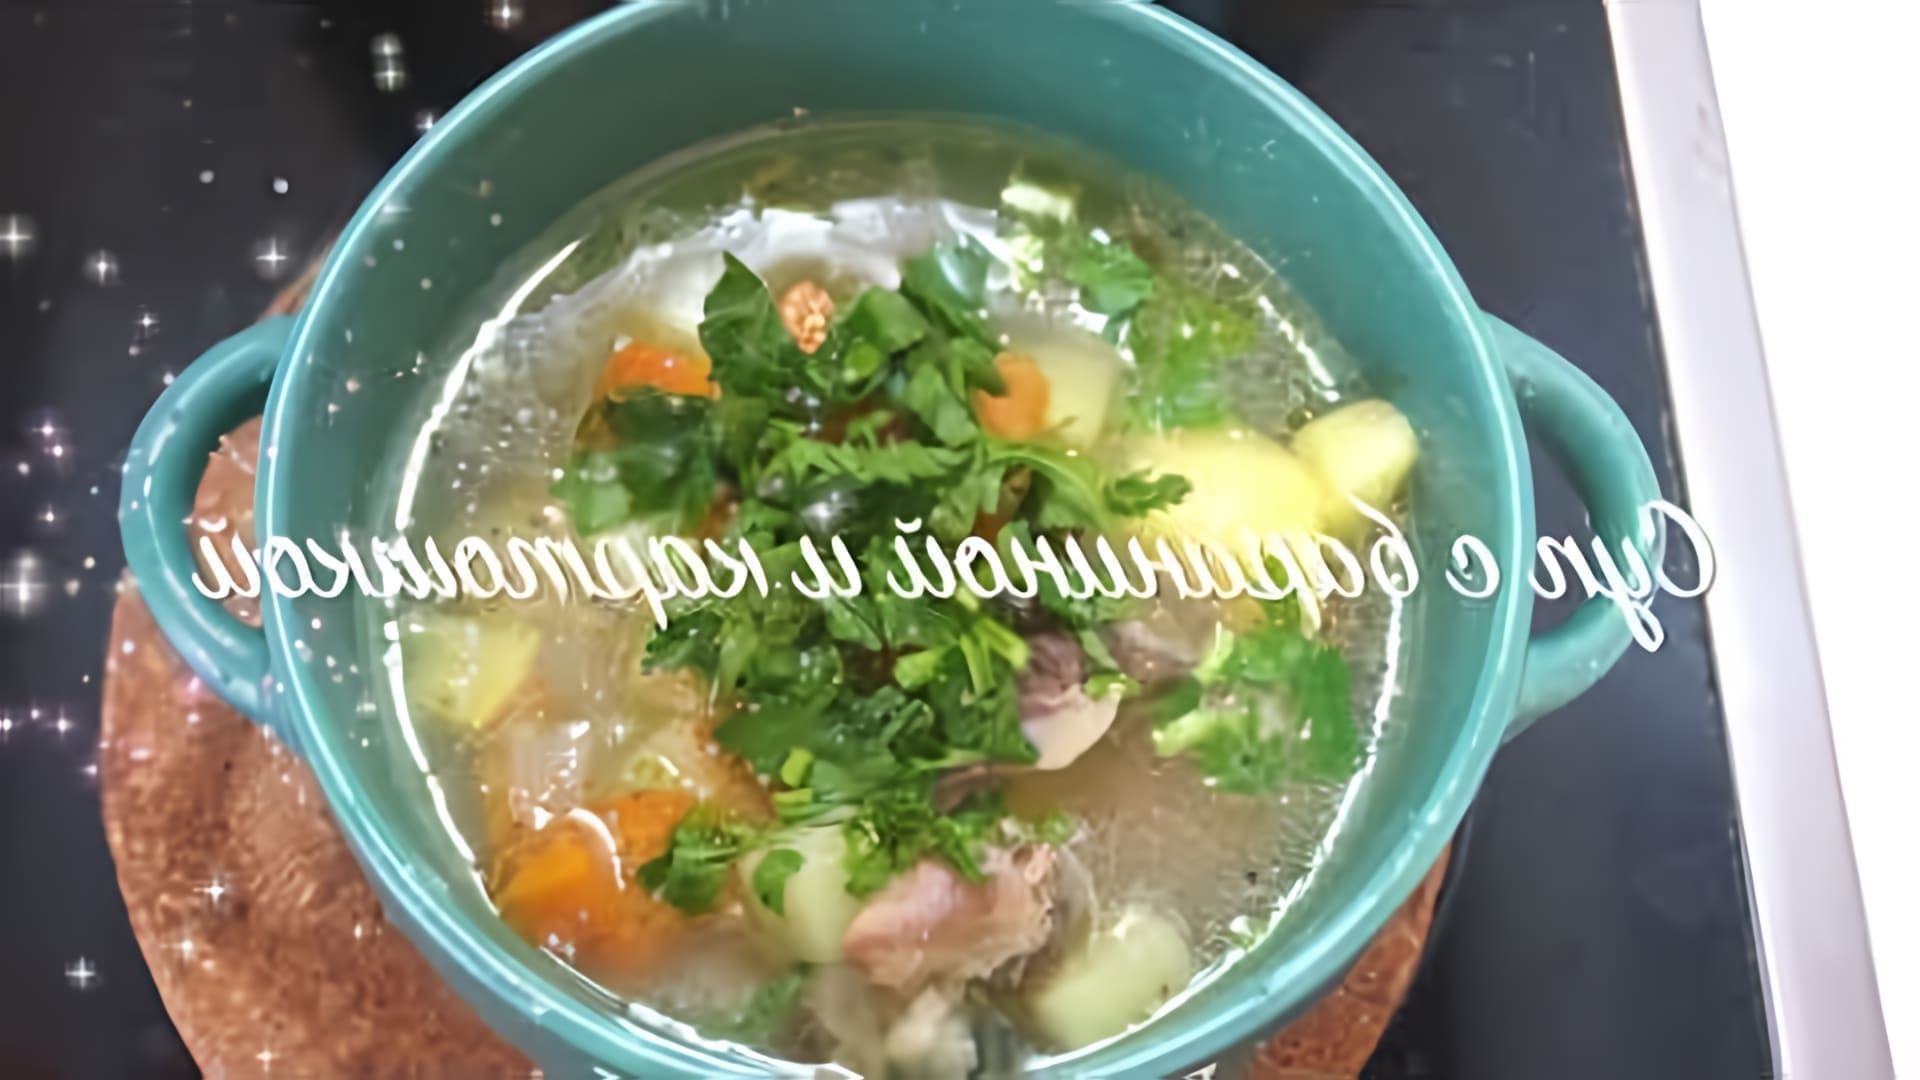 В этом видео-ролике вы увидите, как приготовить вкусный и сытный обед - суп из баранины с картофелем